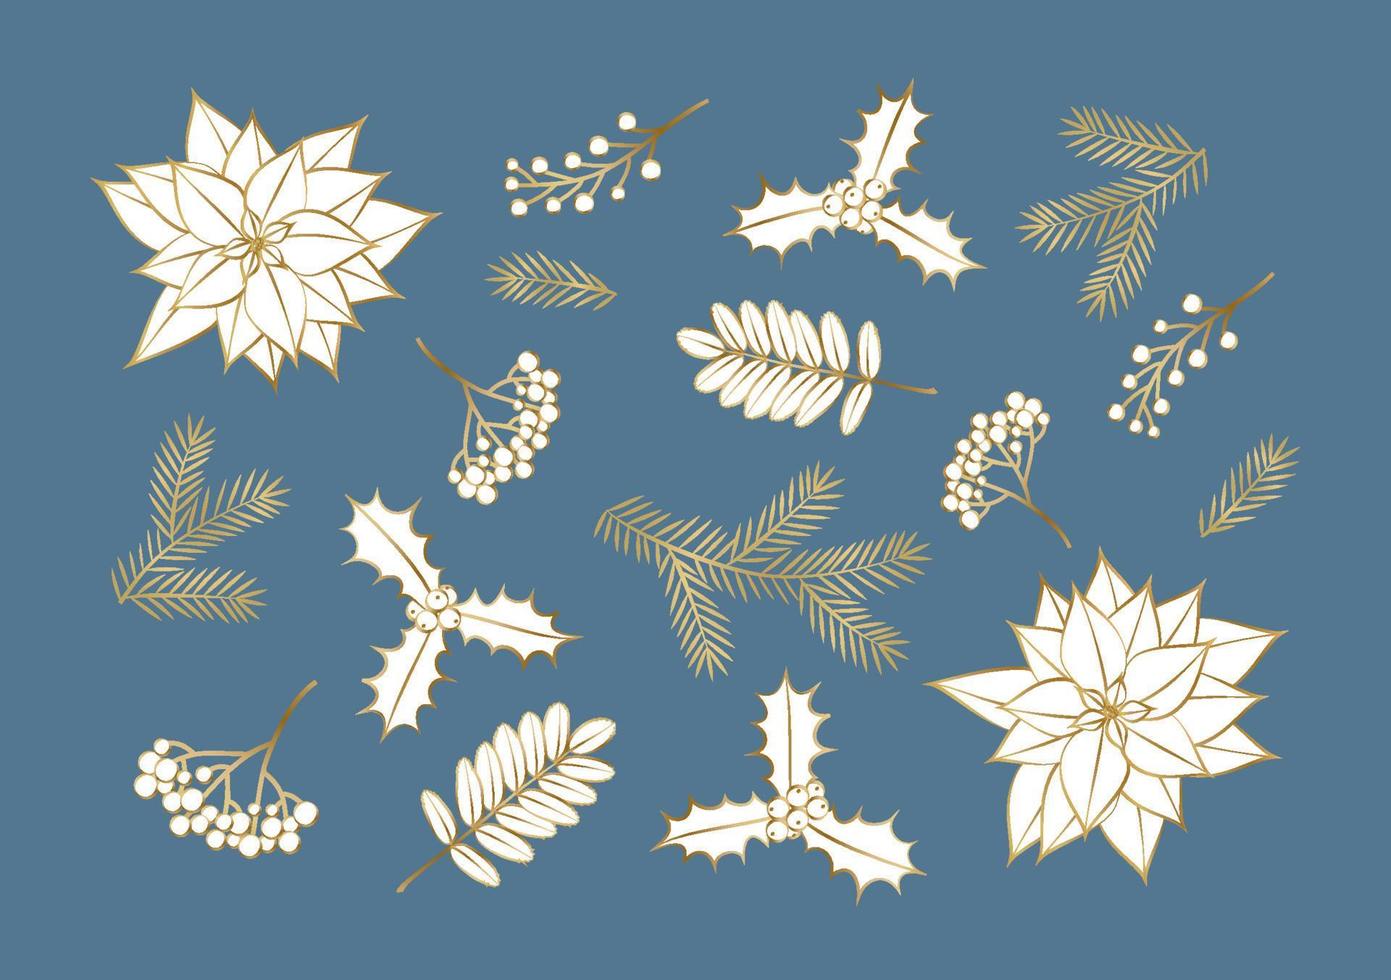 flores de poinsétia floral feliz natal, um cartão para o ano novo. ilustração do design de plantas de inverno para parabéns, panfleto, folheto, capa em vetor